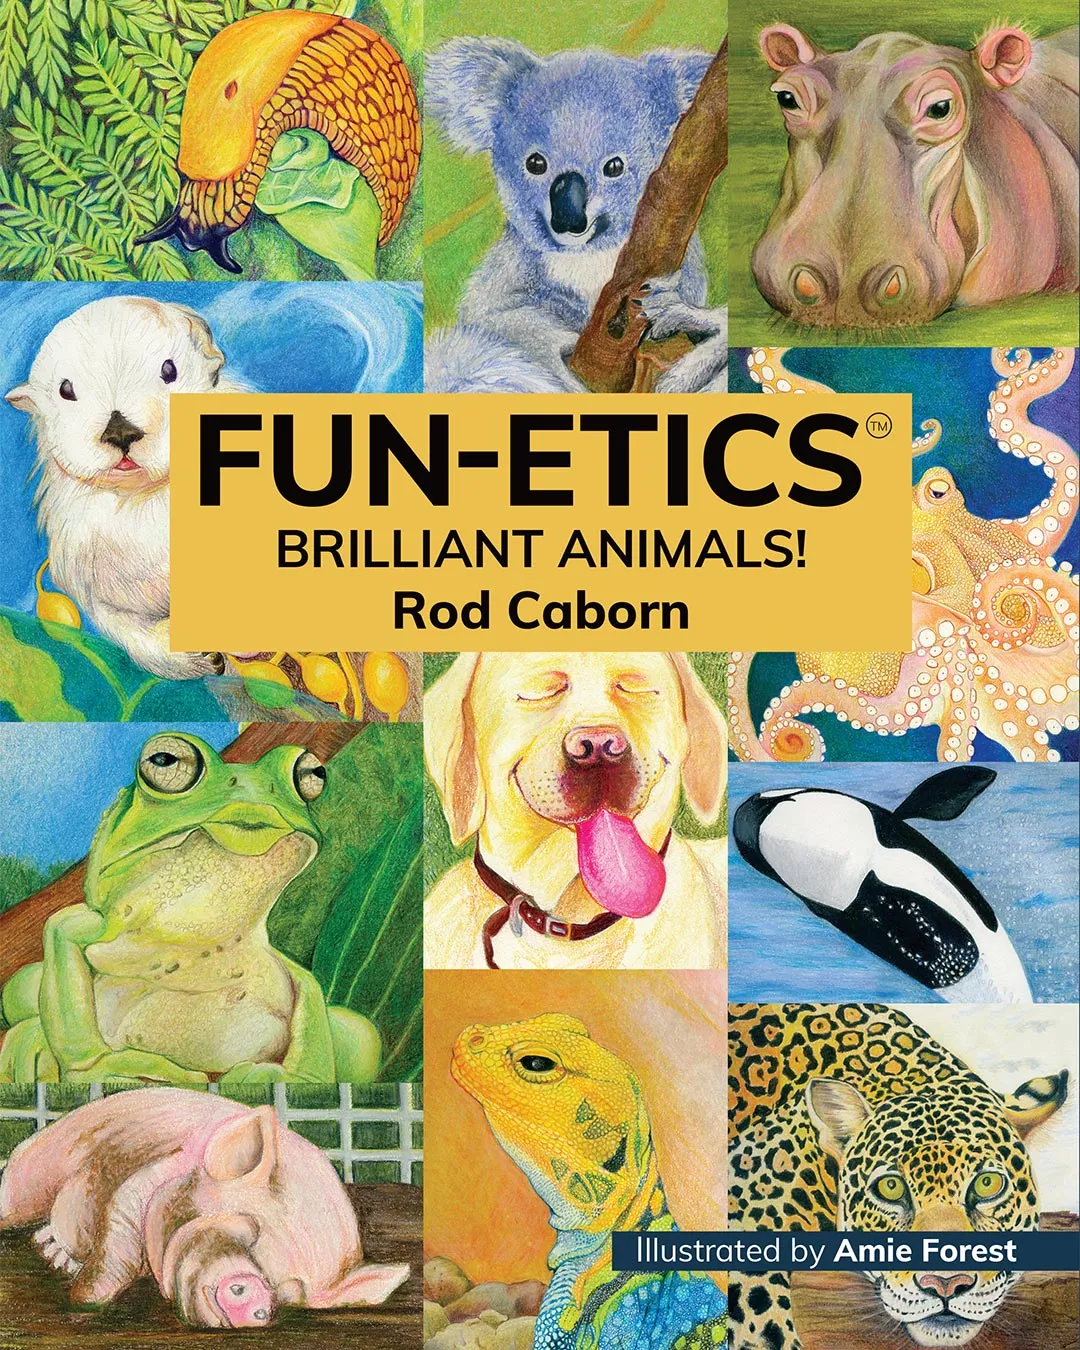 FUN-ETICs Brilliant Animals book cover